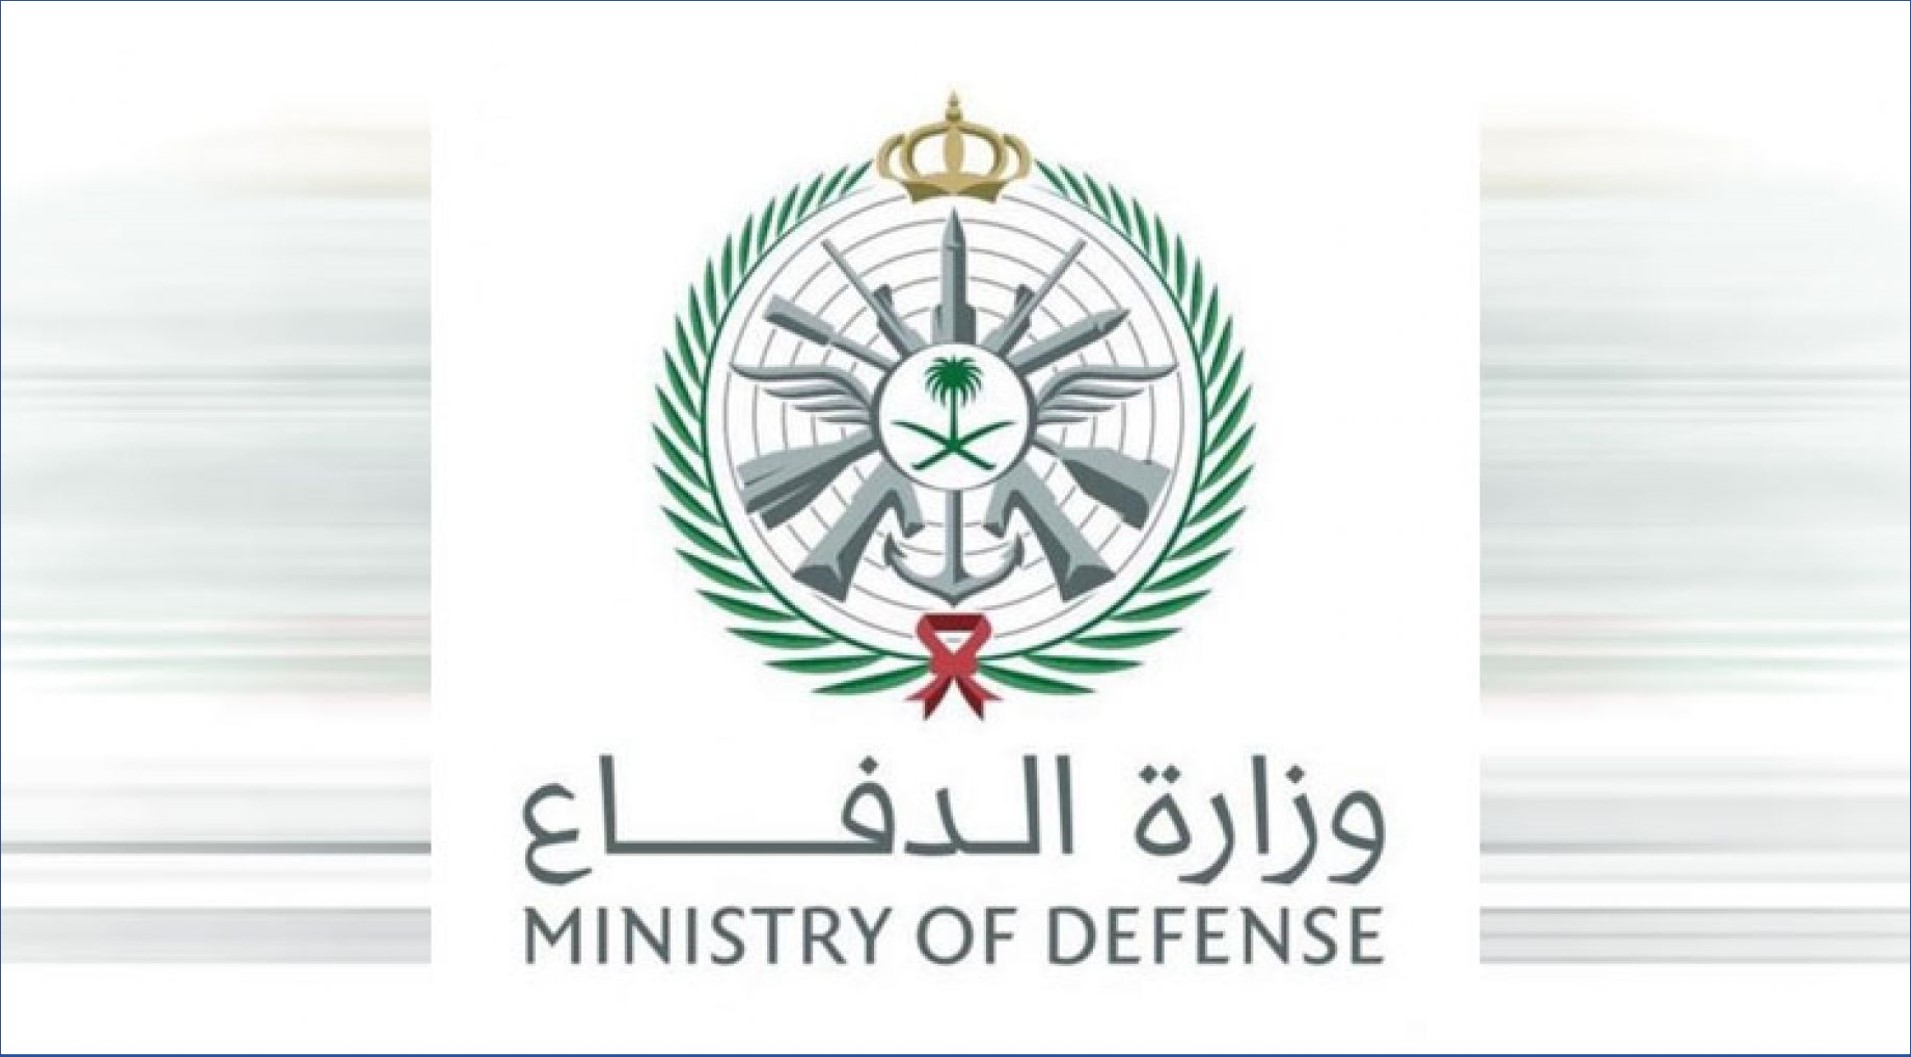 وزارة الدفاع السعودية تعلن فتح باب التوظيف في عدد من المناطق